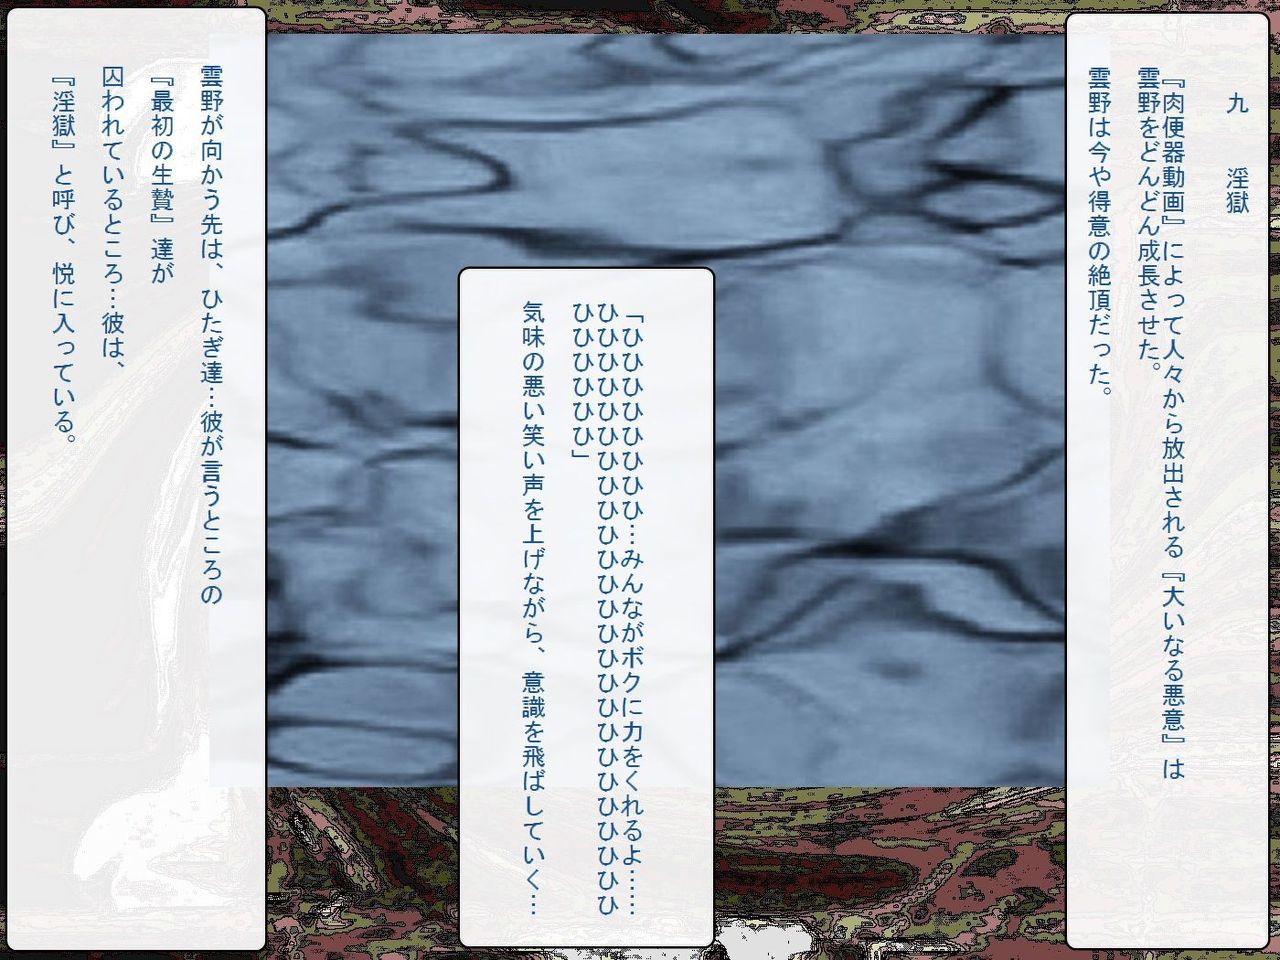 [Teito Bouei Ryodan] RTK Book Ver. 8.4: “‘Tsuki’ Monogatari Saishuu-banashi ‘Tsubasa, soshite... Mayoi maimai’” (<Monogatari> Series) [帝都防衛旅団] RTKBOOK Ver.8.4 「『憑き』物語 最終話 『ひ〇ぎ倶楽部』」 (〈物語〉シリーズ) 296